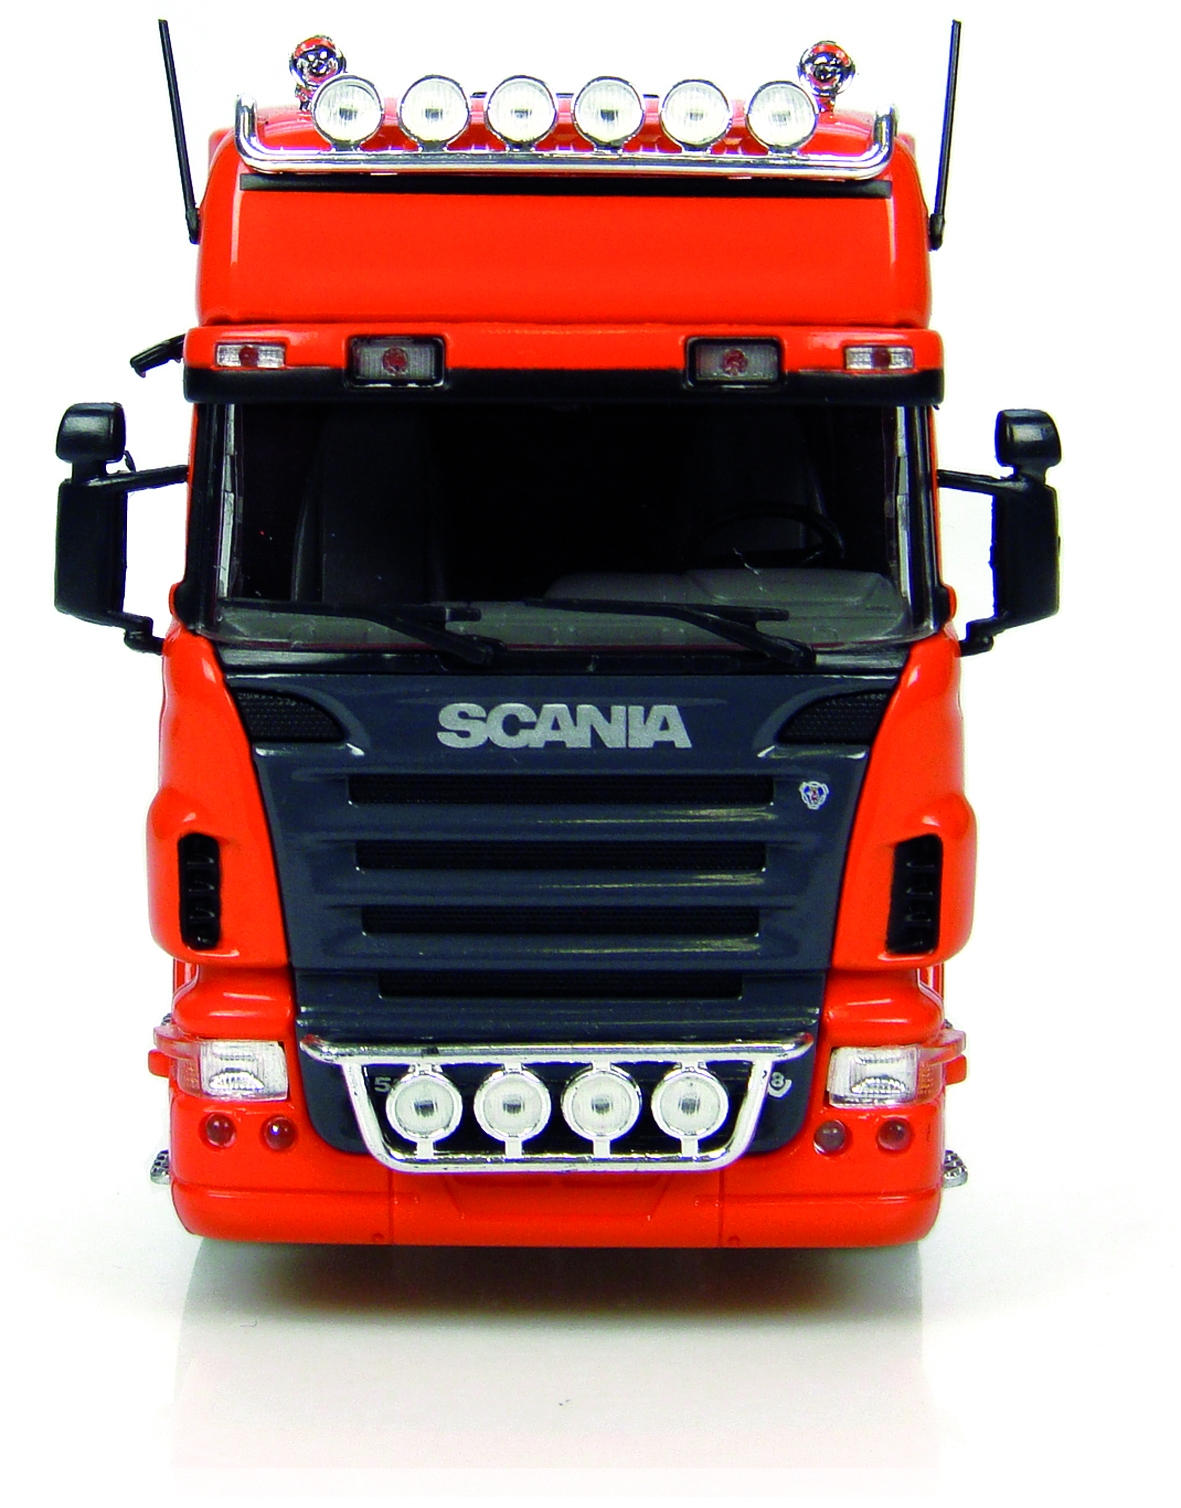 Camion truck radiocommandé d'exception, le Scania Topline de